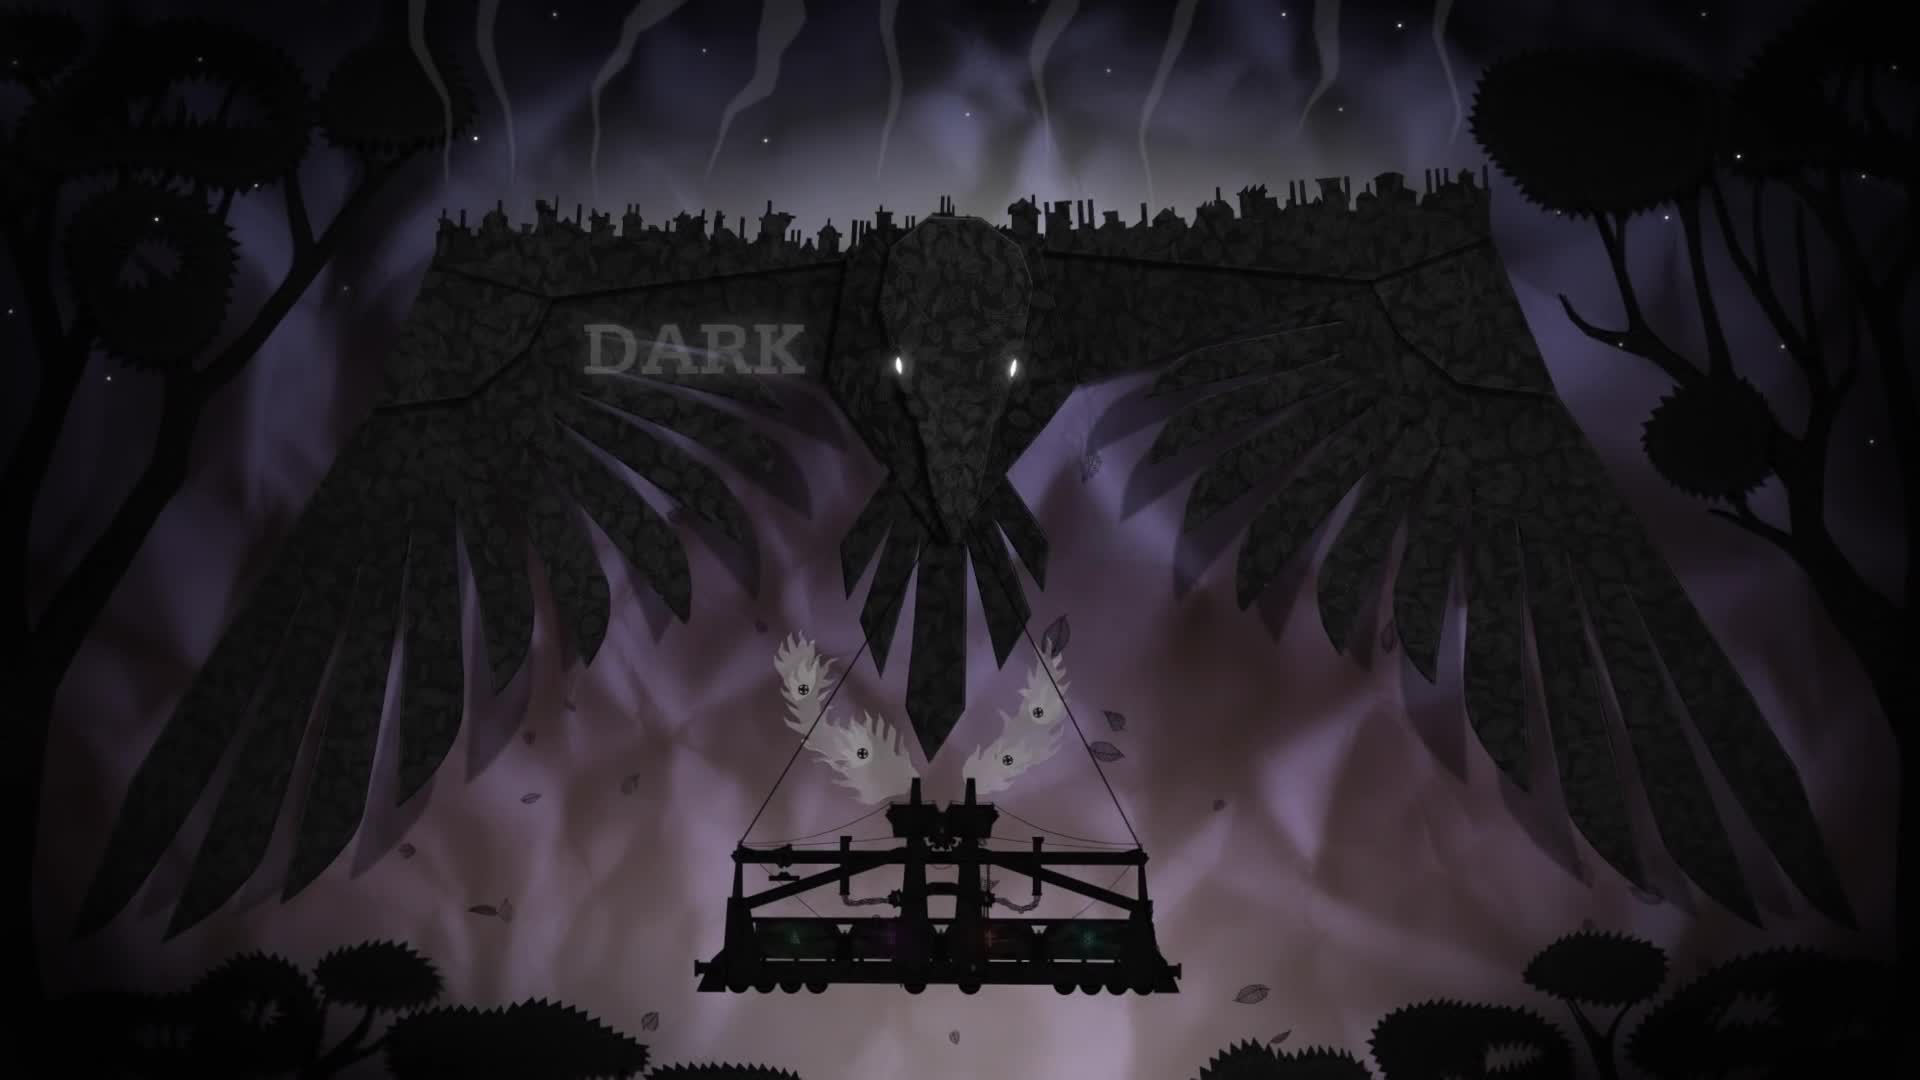 Dark Train - Steam Greenlight Trailer